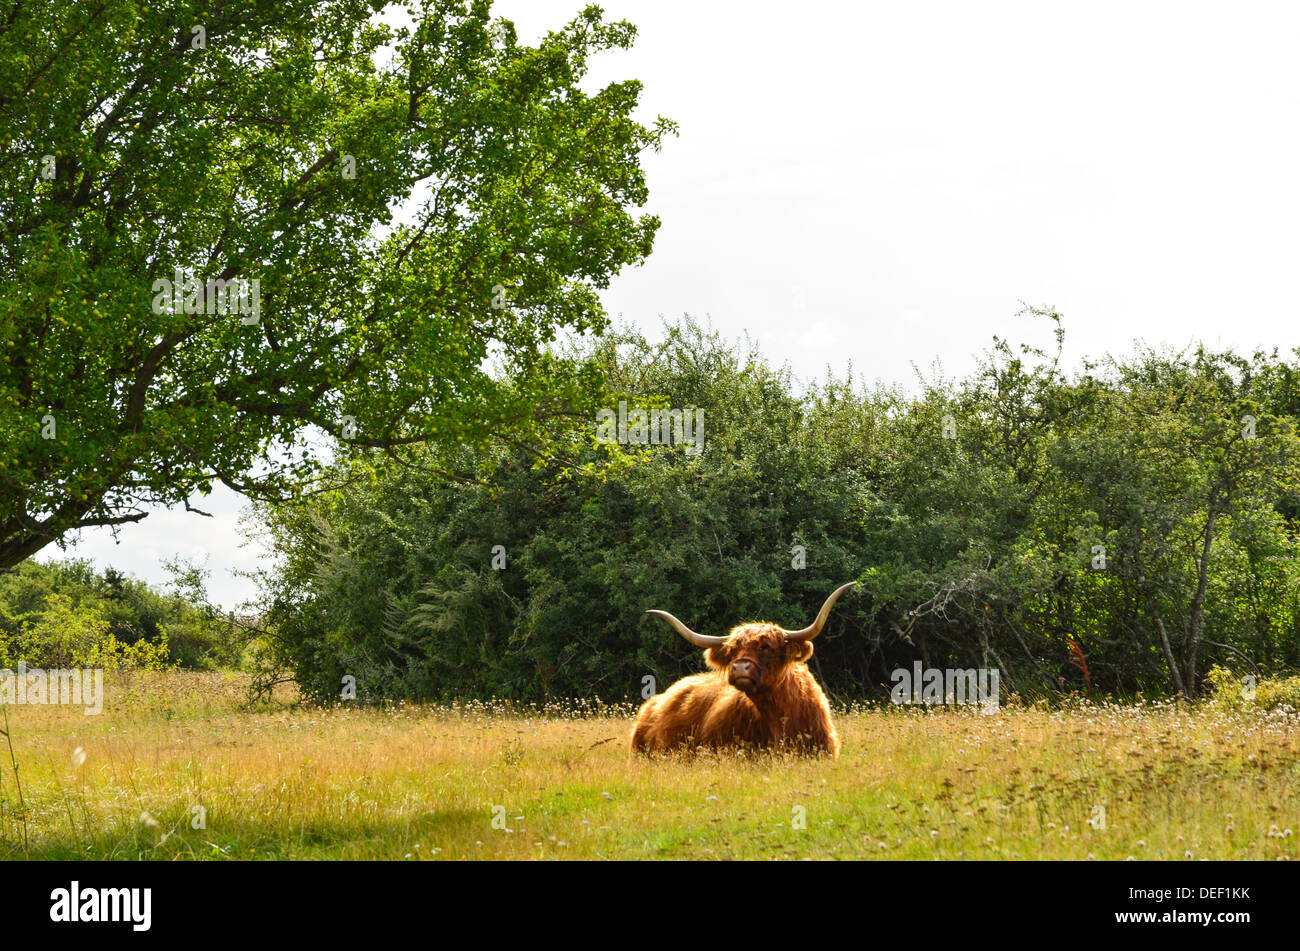 Highland cattle au repos dans un paysage de pâturages Banque D'Images